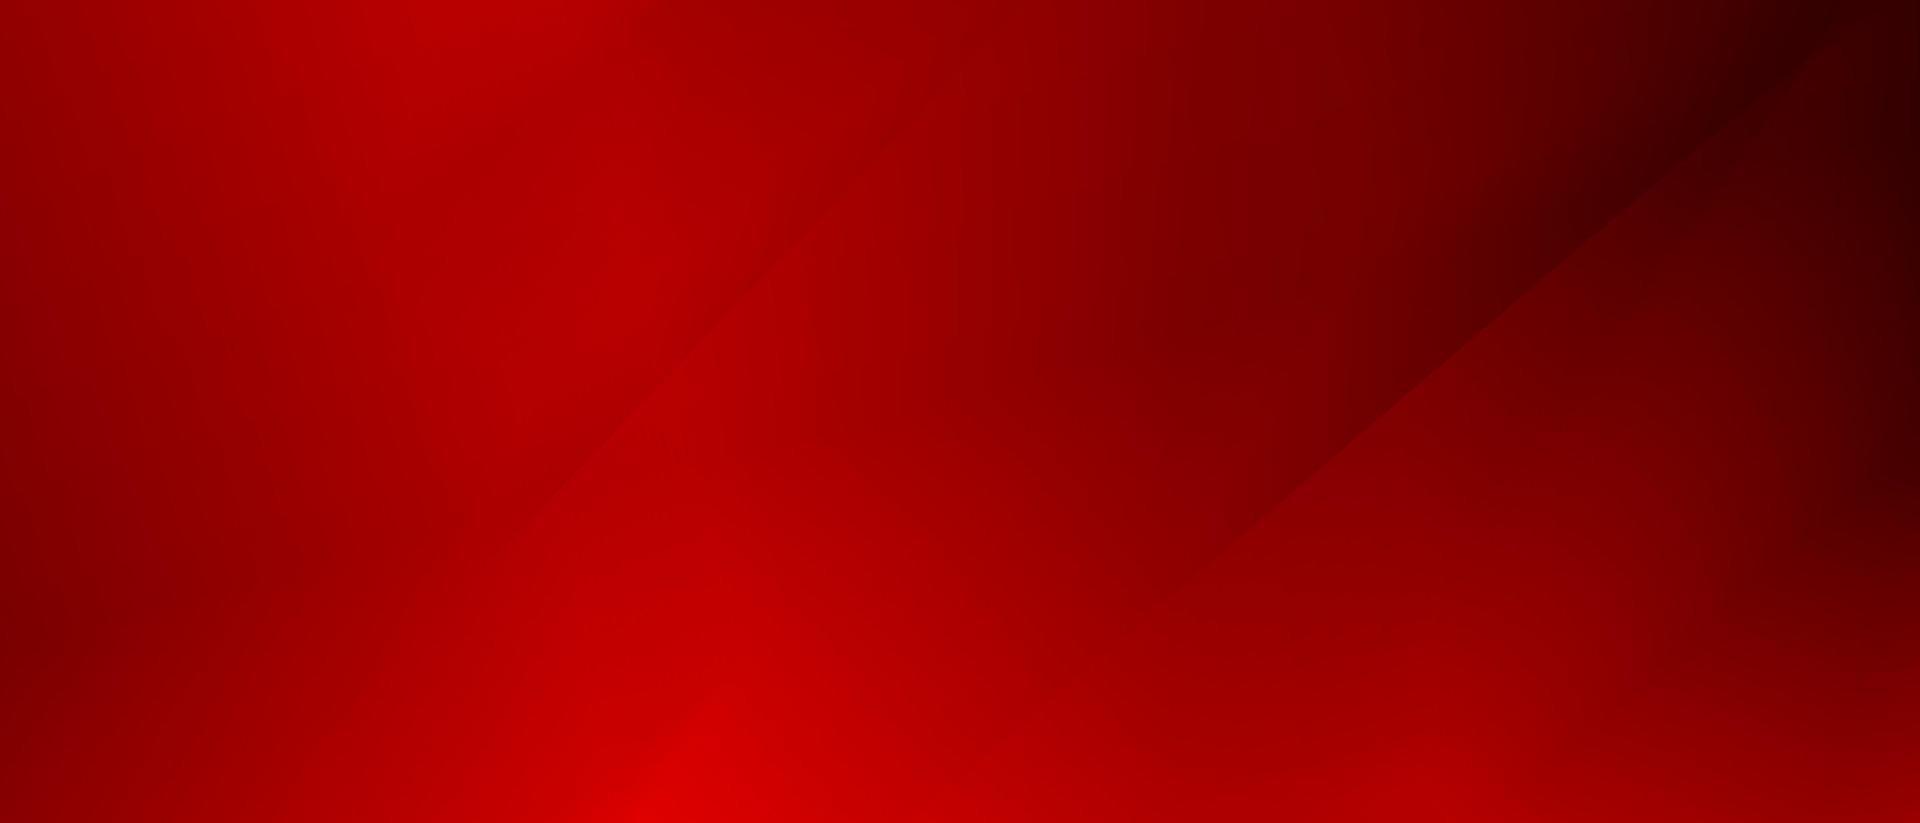 resumen rojo y negro son ligero modelo con el degradado es el con piso pared metal textura suave tecnología diagonal antecedentes negro oscuro pulcro limpiar moderno. futurista fondo para correos vector